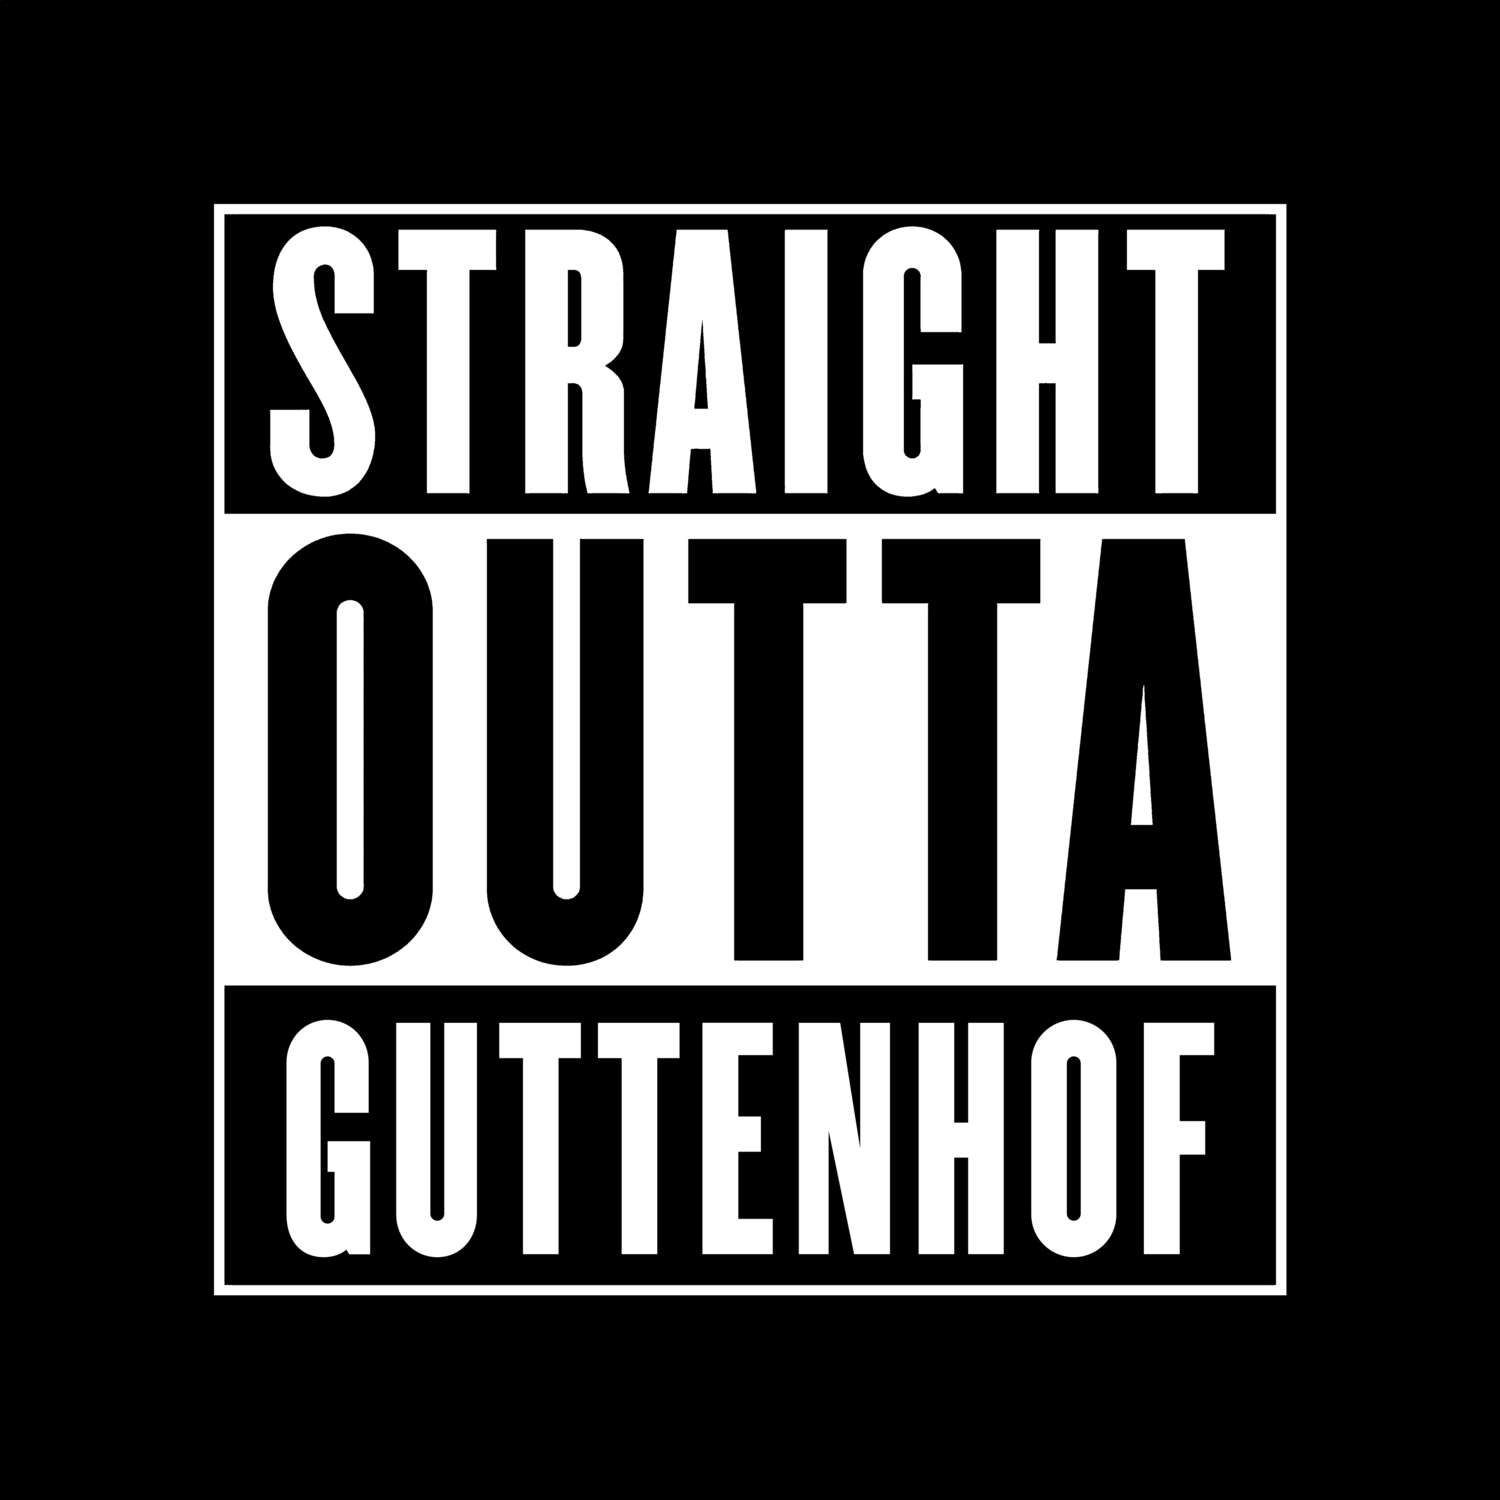 Guttenhof T-Shirt »Straight Outta«